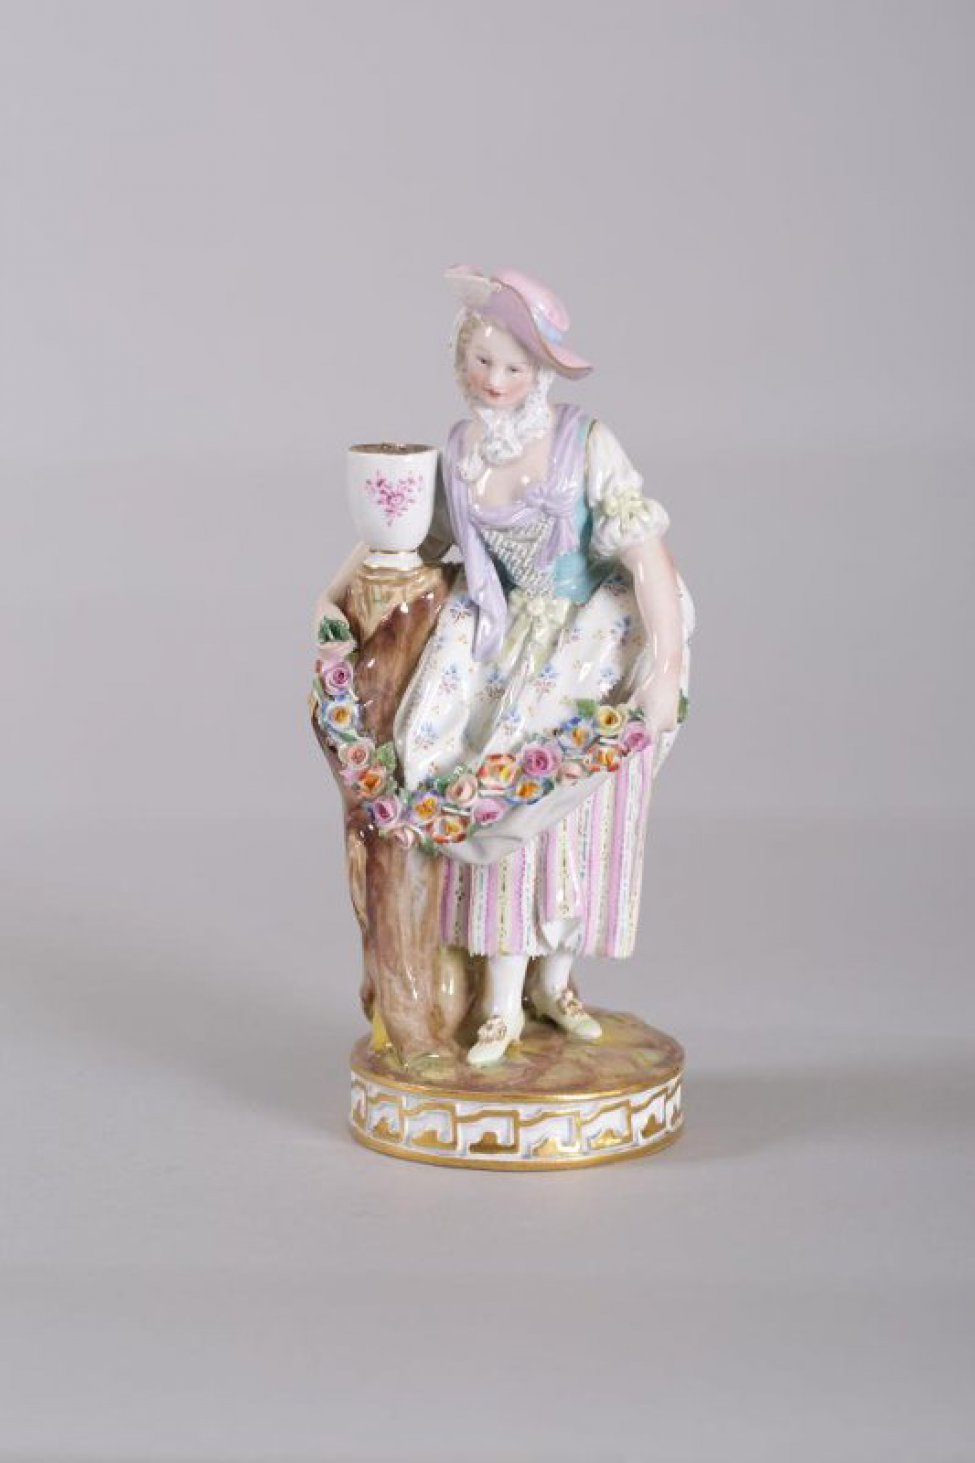 Фигура на круглом постаменте. Изображена молодая женщина в розовой шляпке с голубой лентой. Одной рукой она обняла ствол дерева с вазой наверху, в руках гирлянда цветов. Кругом по боковой стороне постамента золоченый орнамент.